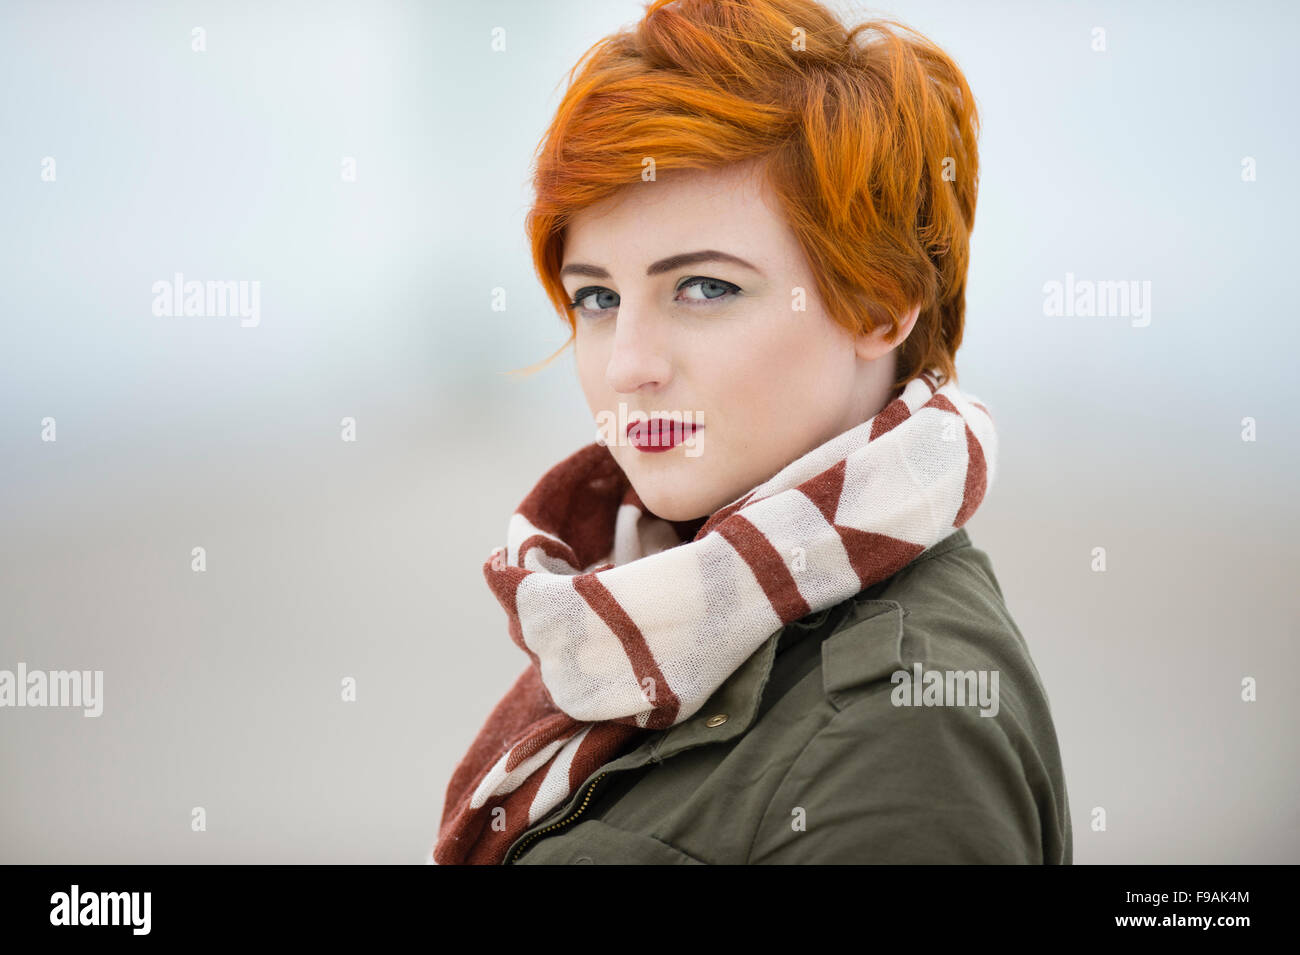 Un seul adolescent solo femme fille teint de peau pâle et rouge flamme  cheveux courts portant un manteau veste verte et un foulard , par  elle-même, à l'extérieur, UK Photo Stock -